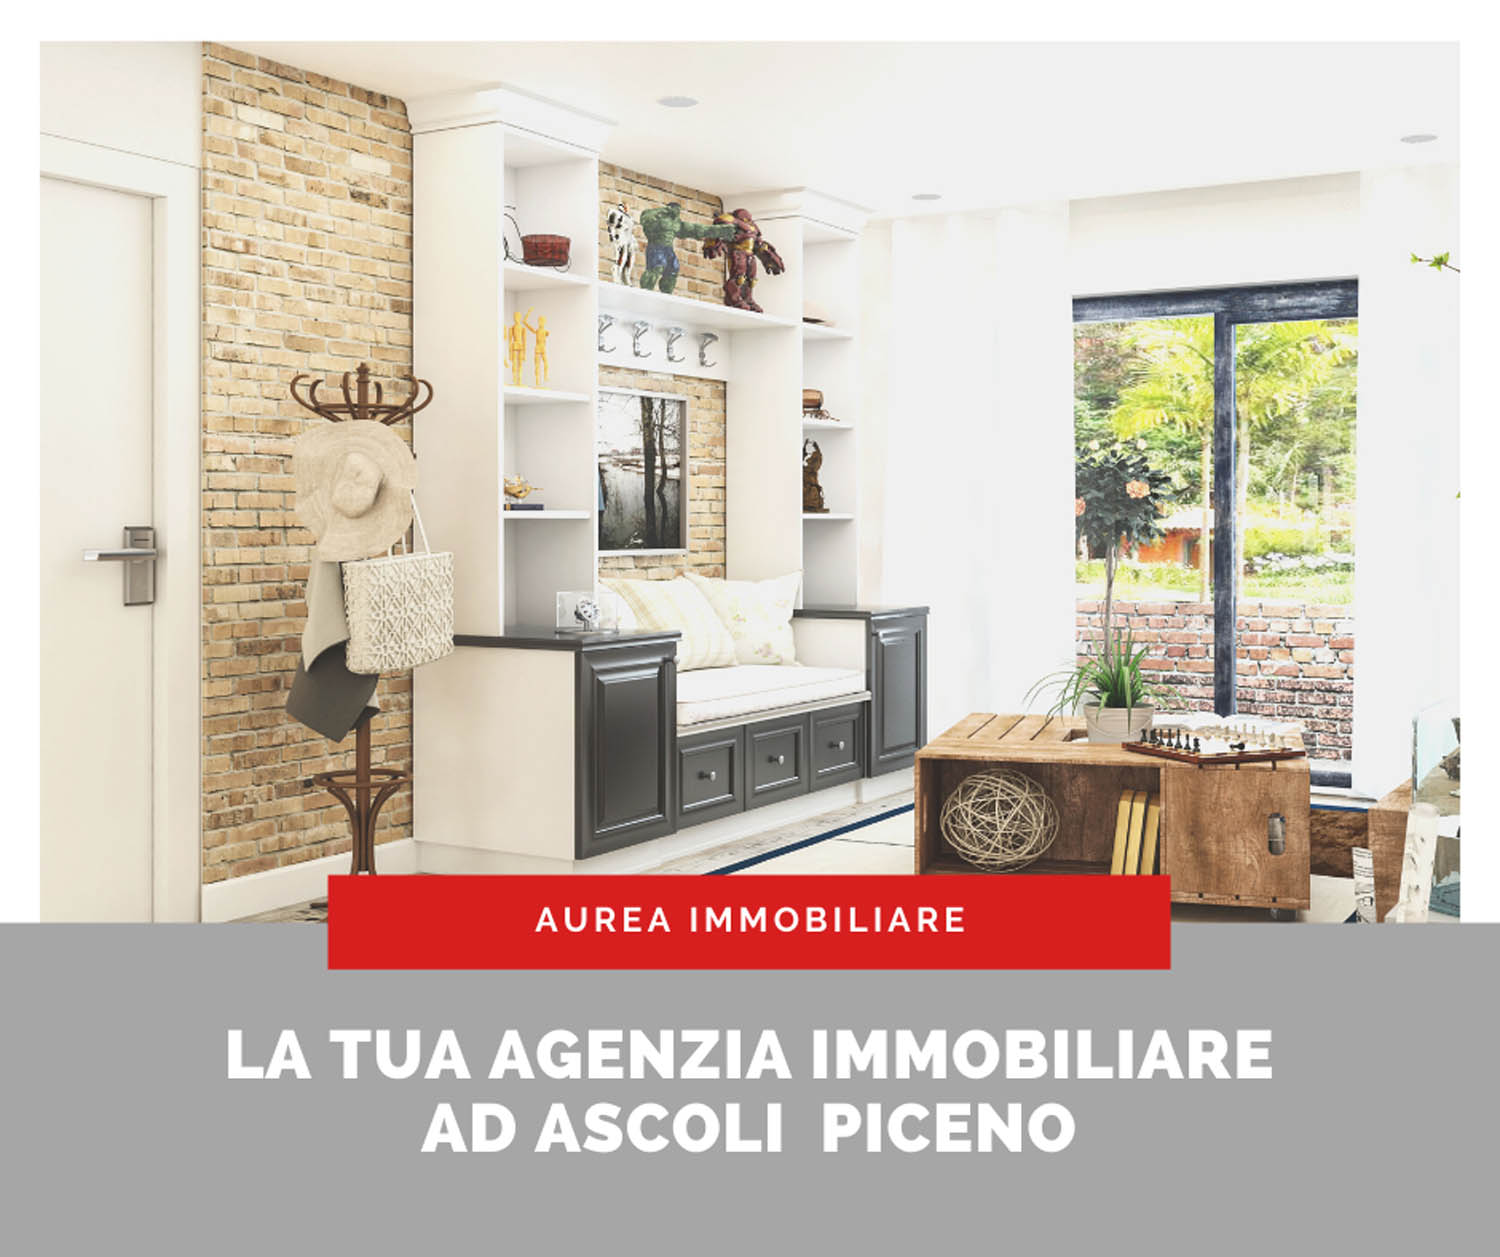 Aurea immobiliare Ascoli Piceno Agenzie immobiliari